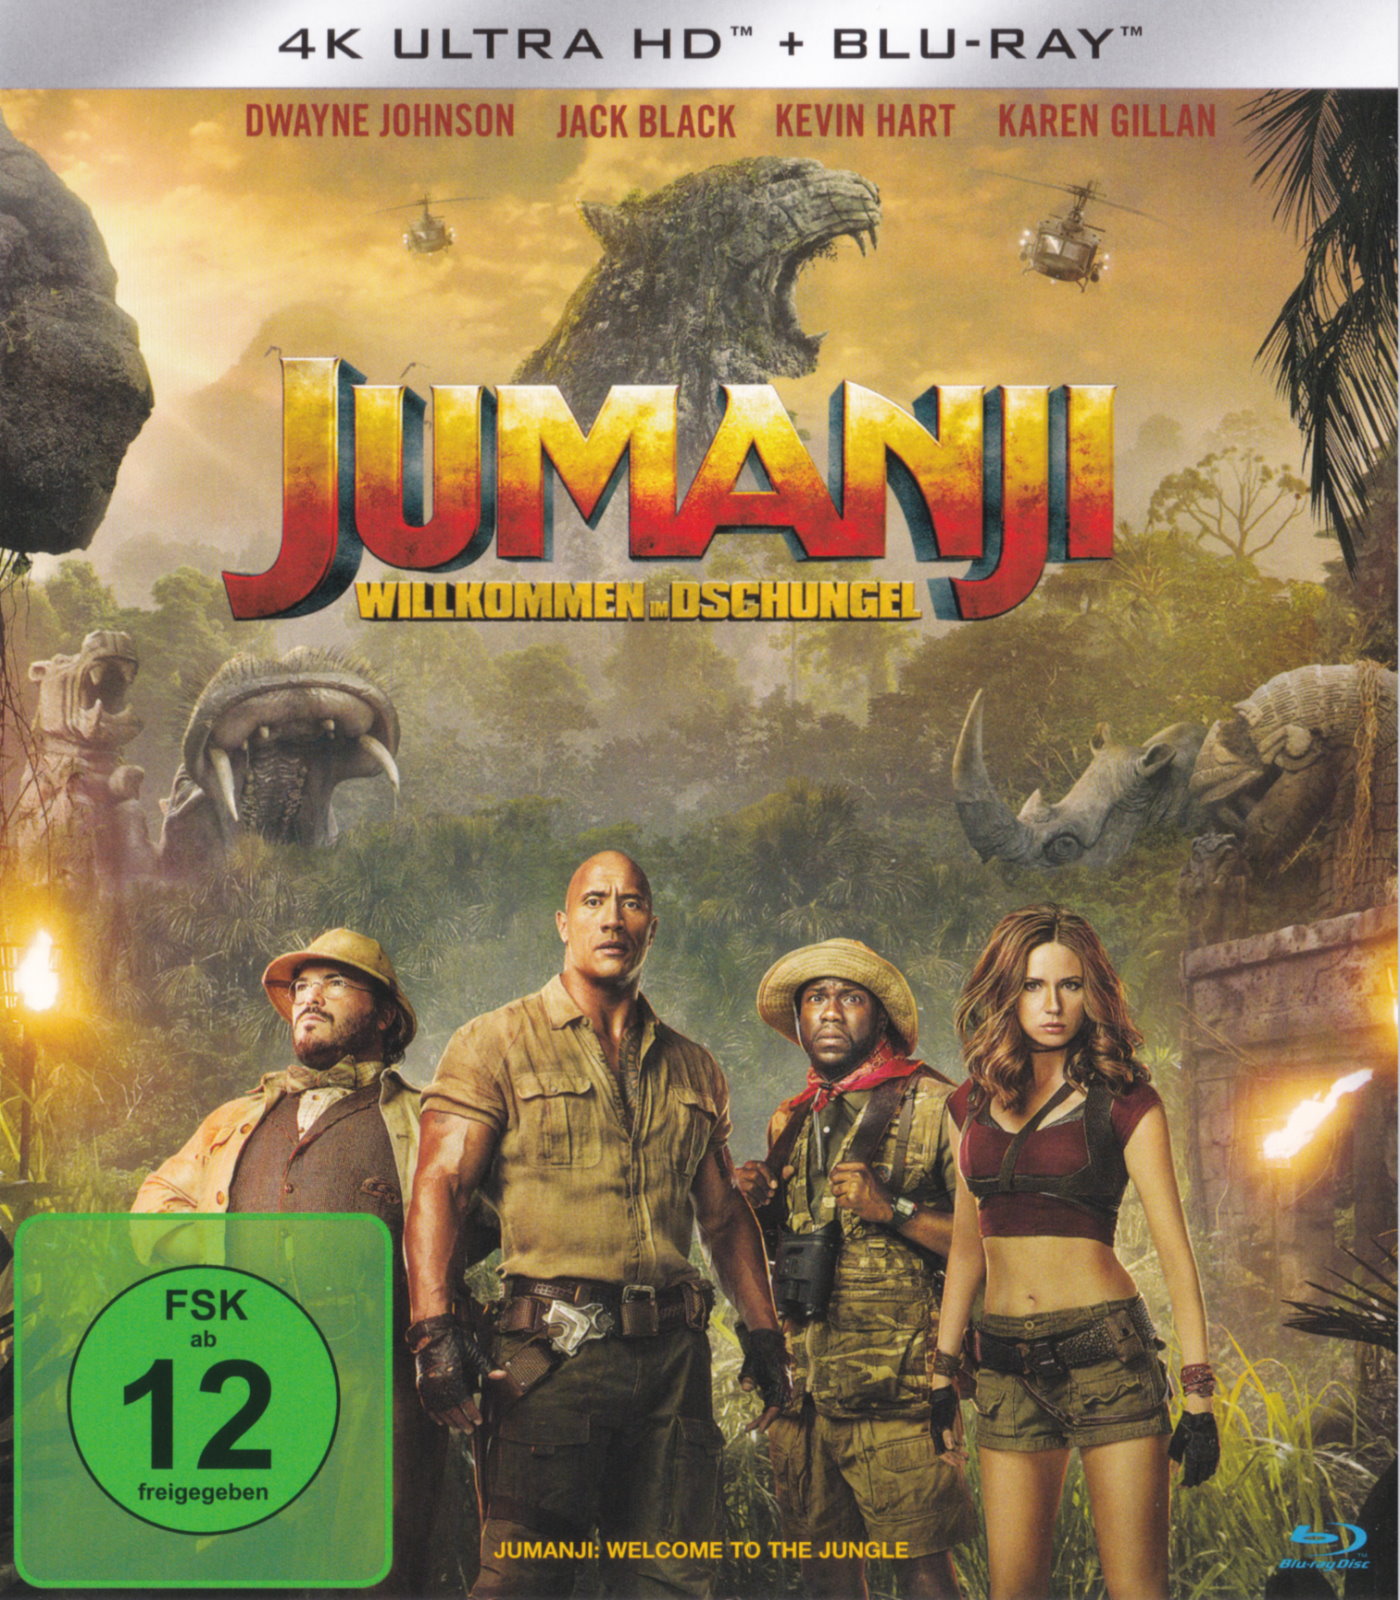 Cover - Jumanji - Willkommen im Dschungel.jpg